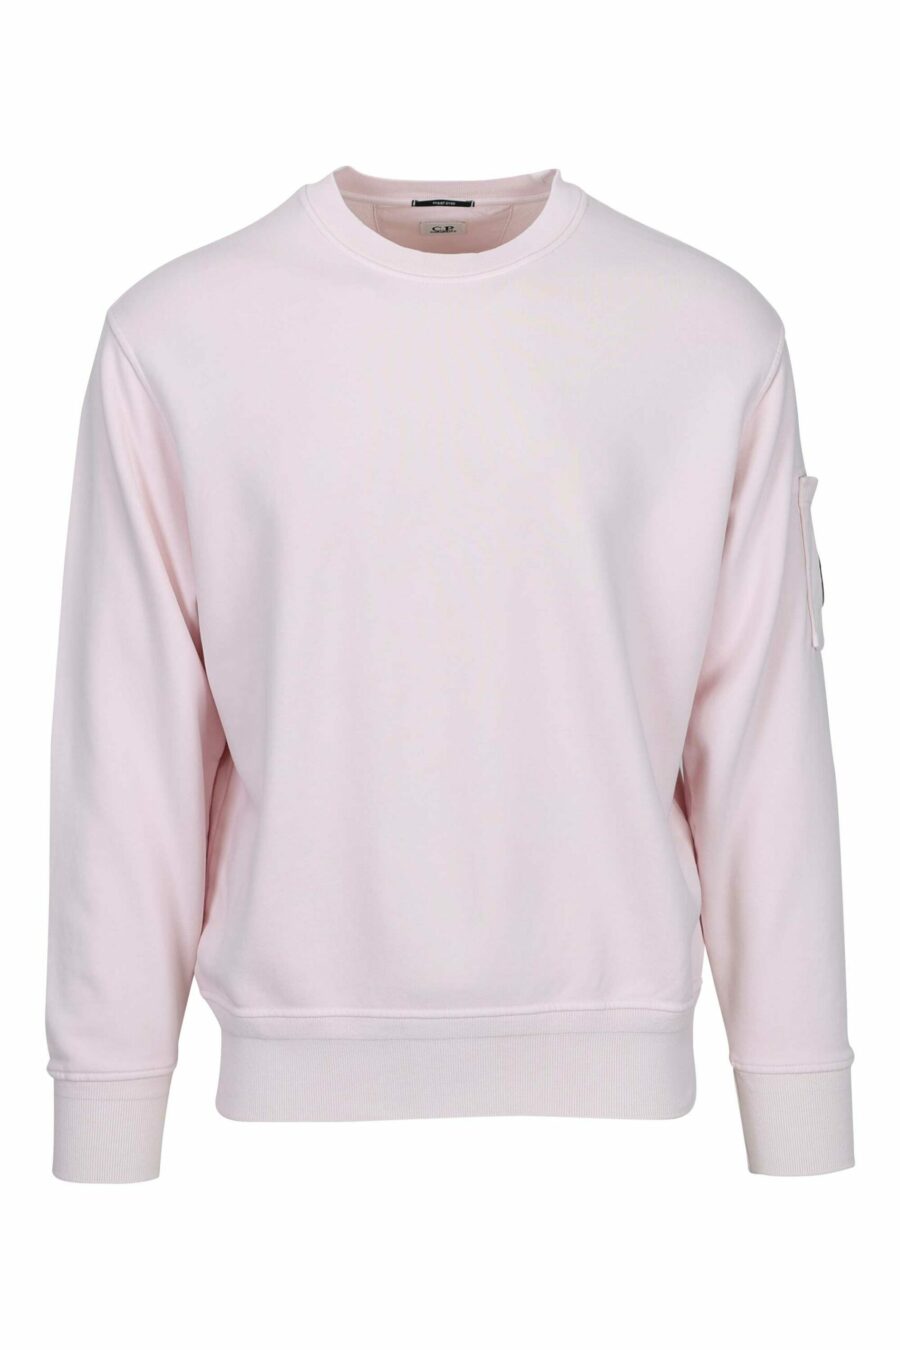 Camisola cor-de-rosa com bolso e lente com mini-logotipo - 7620943751697 scaled